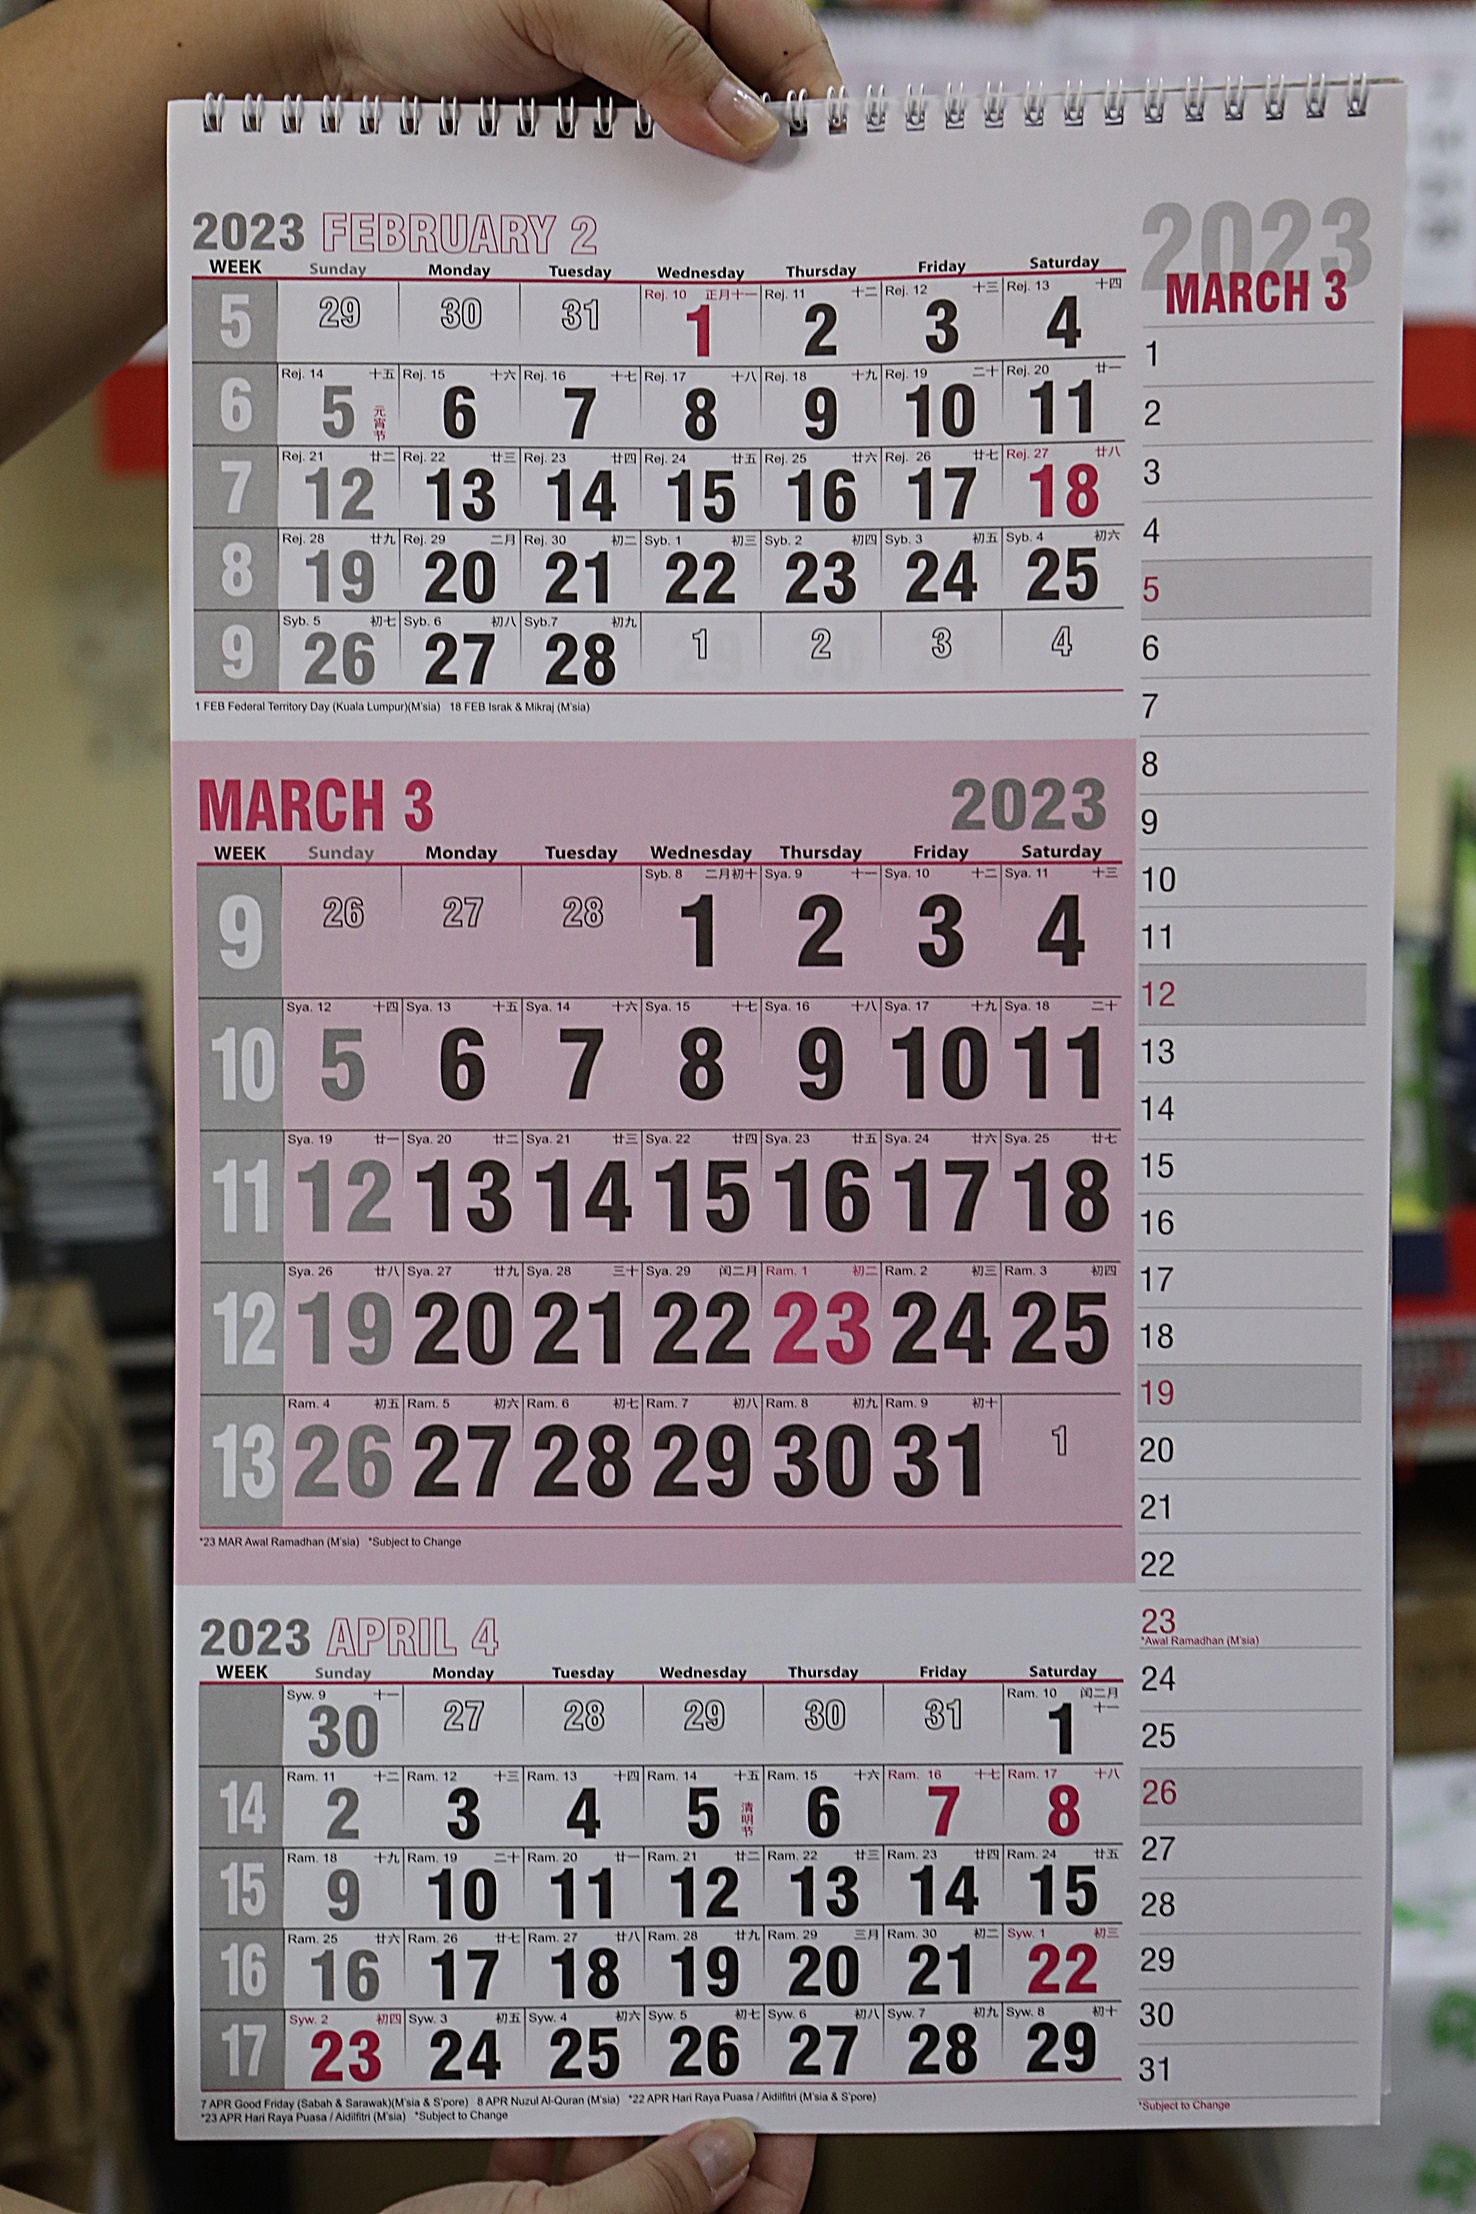 封面－大都会／印刷厂赶印有标注学校假期的日历／8图